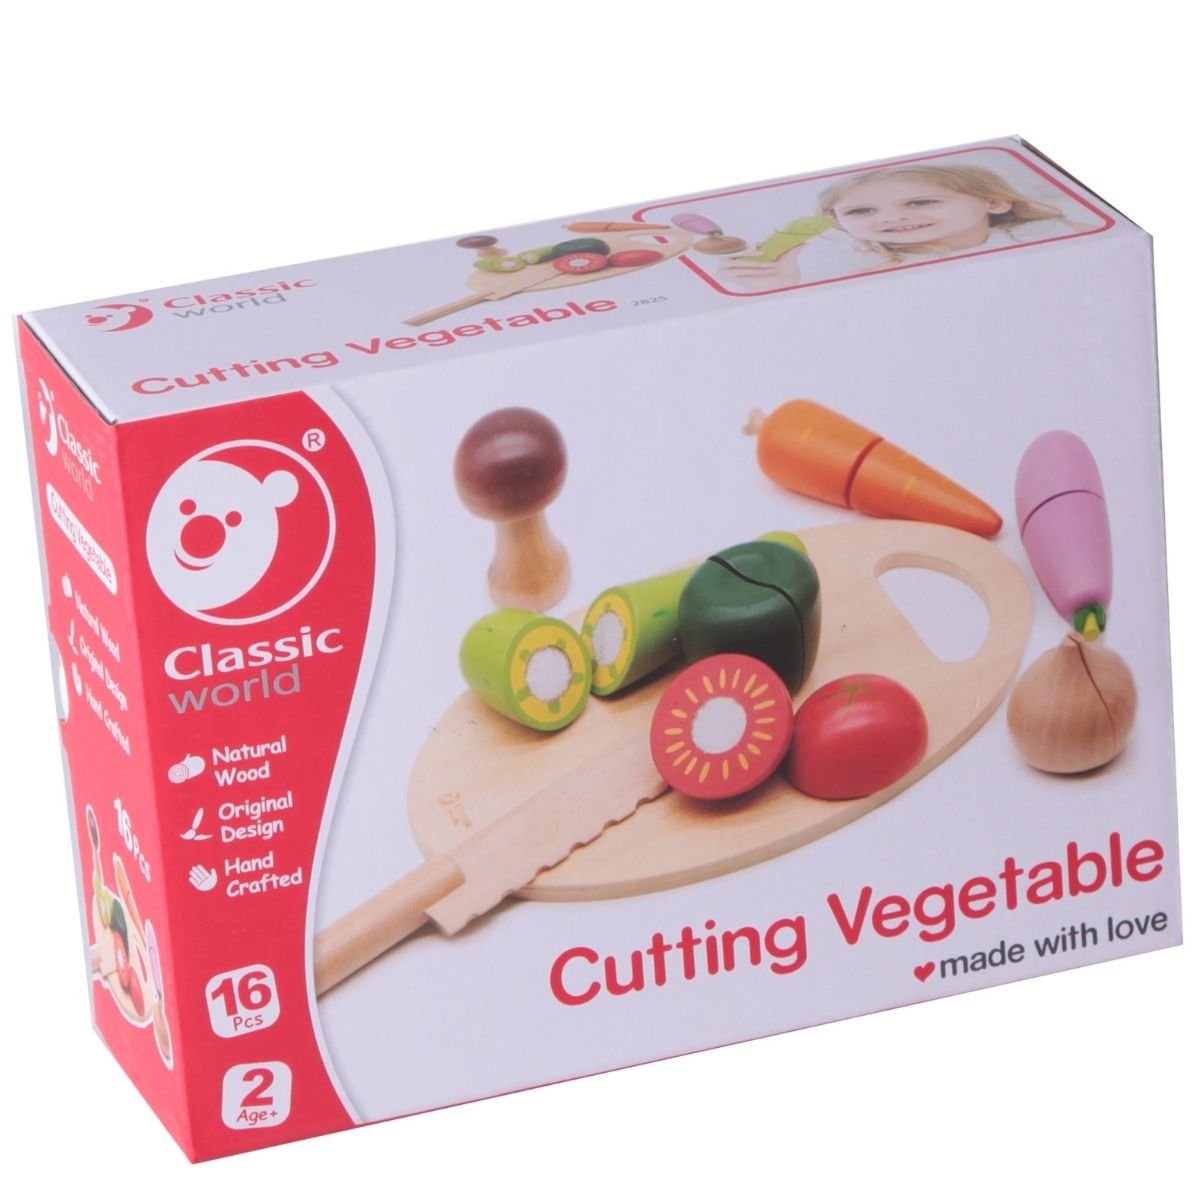 Set de cortar verduras